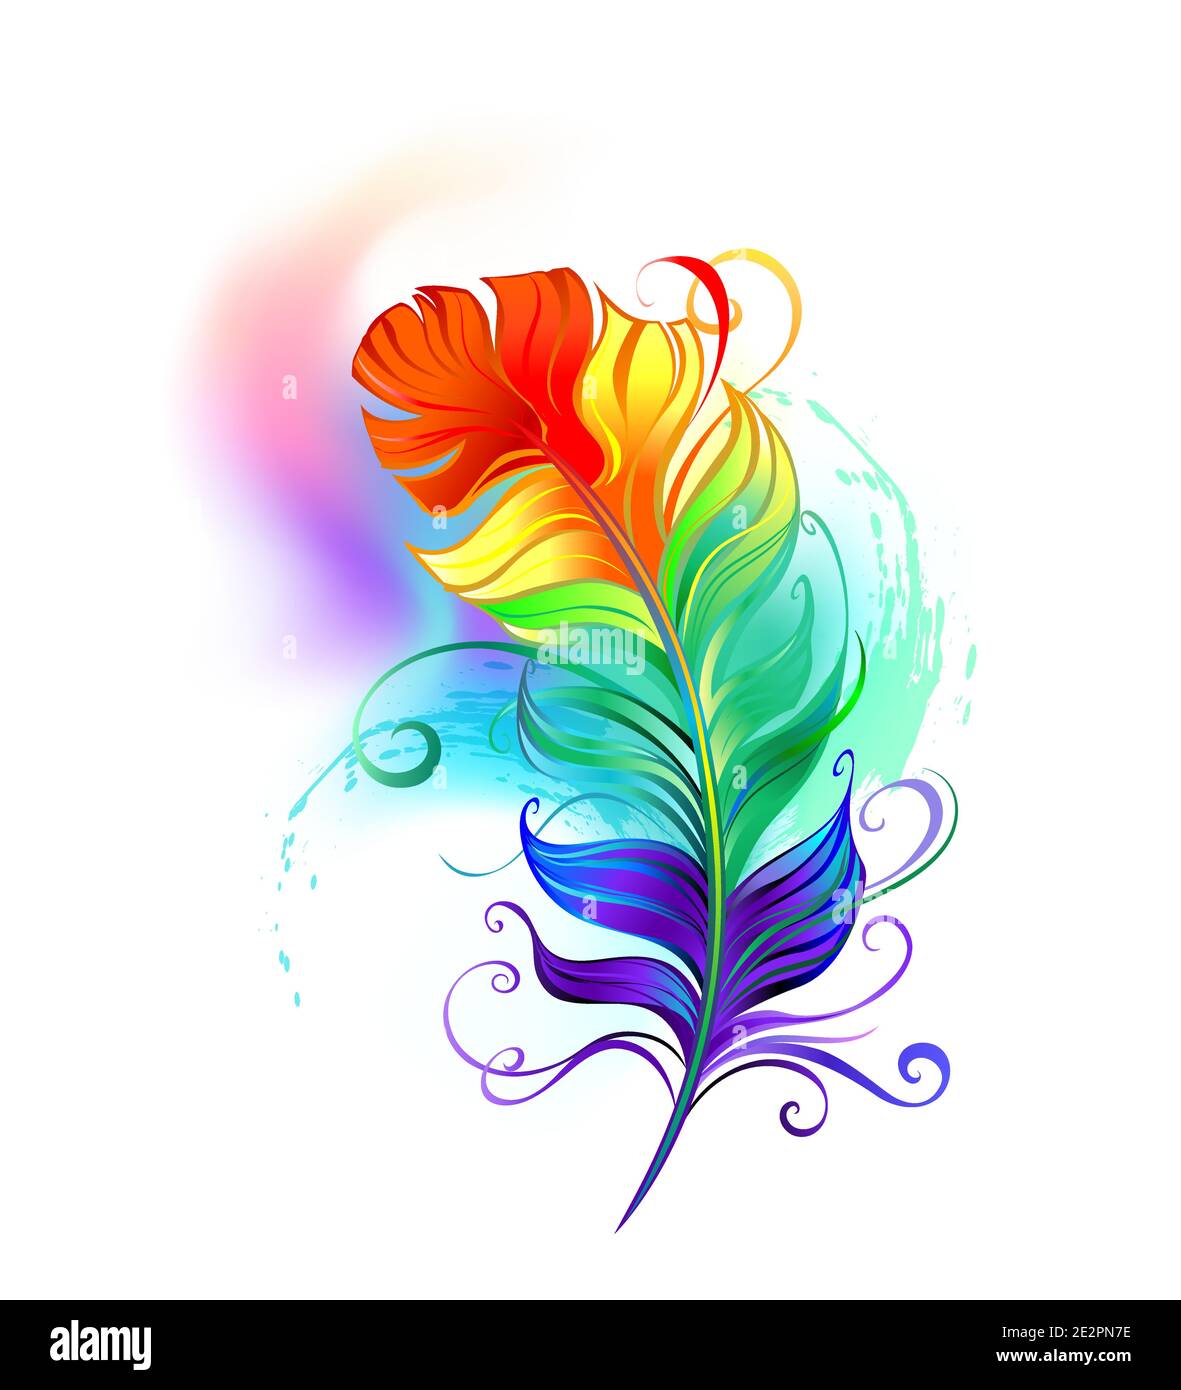 https://c8.alamy.com/compes/2e2pn7e/artisticamente-dibujado-pluma-de-arco-iris-vibrante-sobre-fondo-blanco-de-colores-brillantes-diseno-de-plumas-estilo-boho-2e2pn7e.jpg